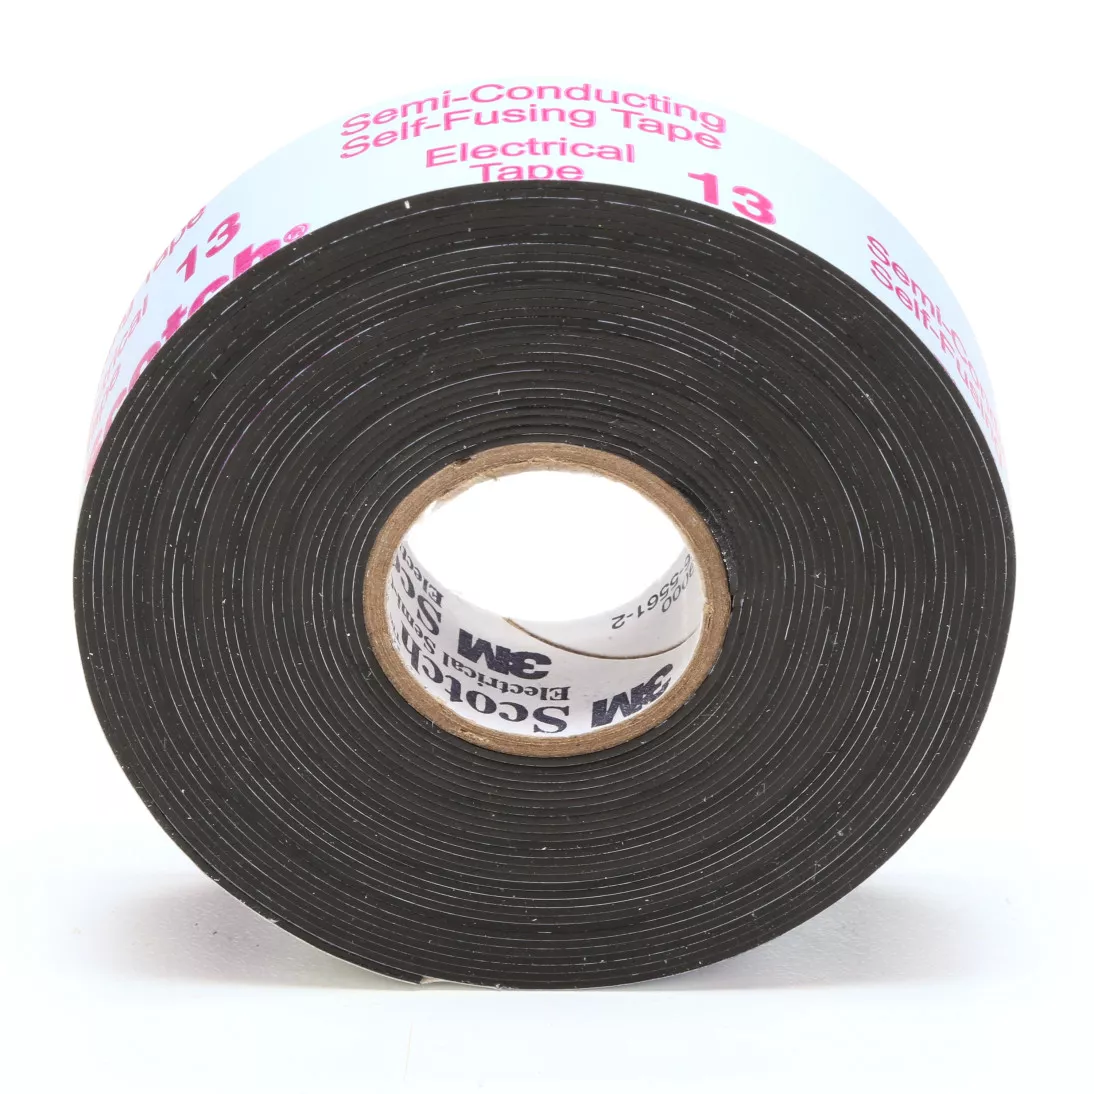 Scotch® Electrical Semi-Conducting Tape 13, 3/4 in x 15 ft, Printed,
Black, 50 rolls/Case, BULK